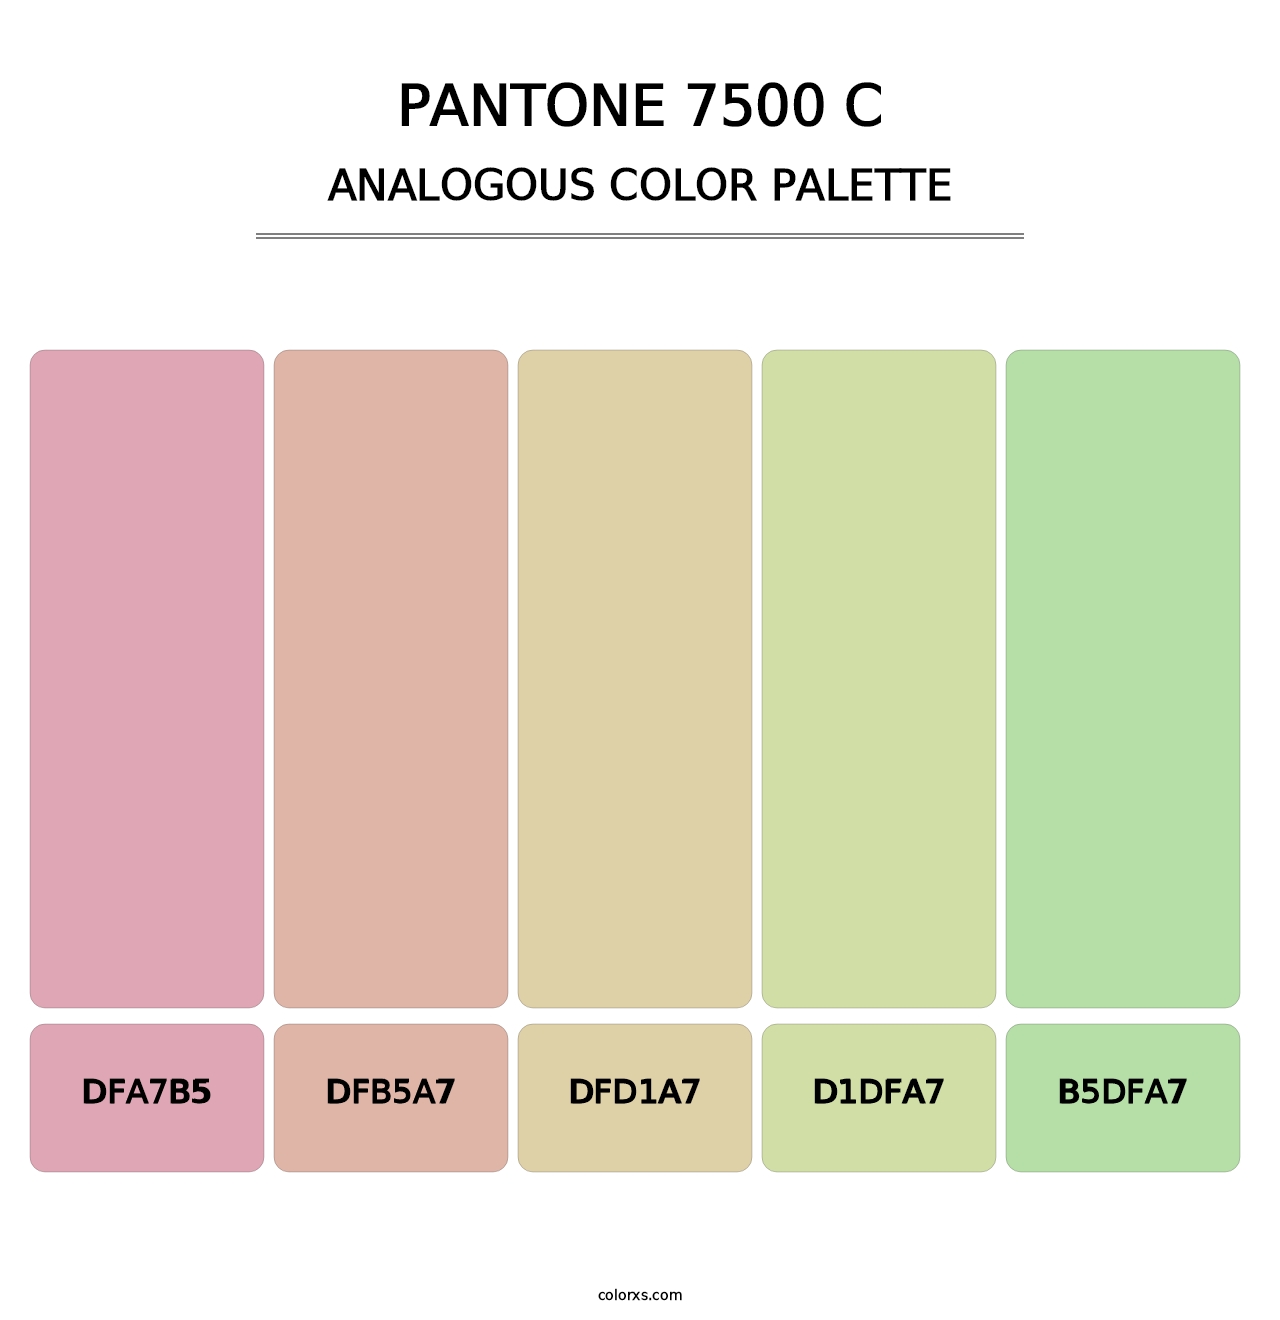 PANTONE 7500 C - Analogous Color Palette